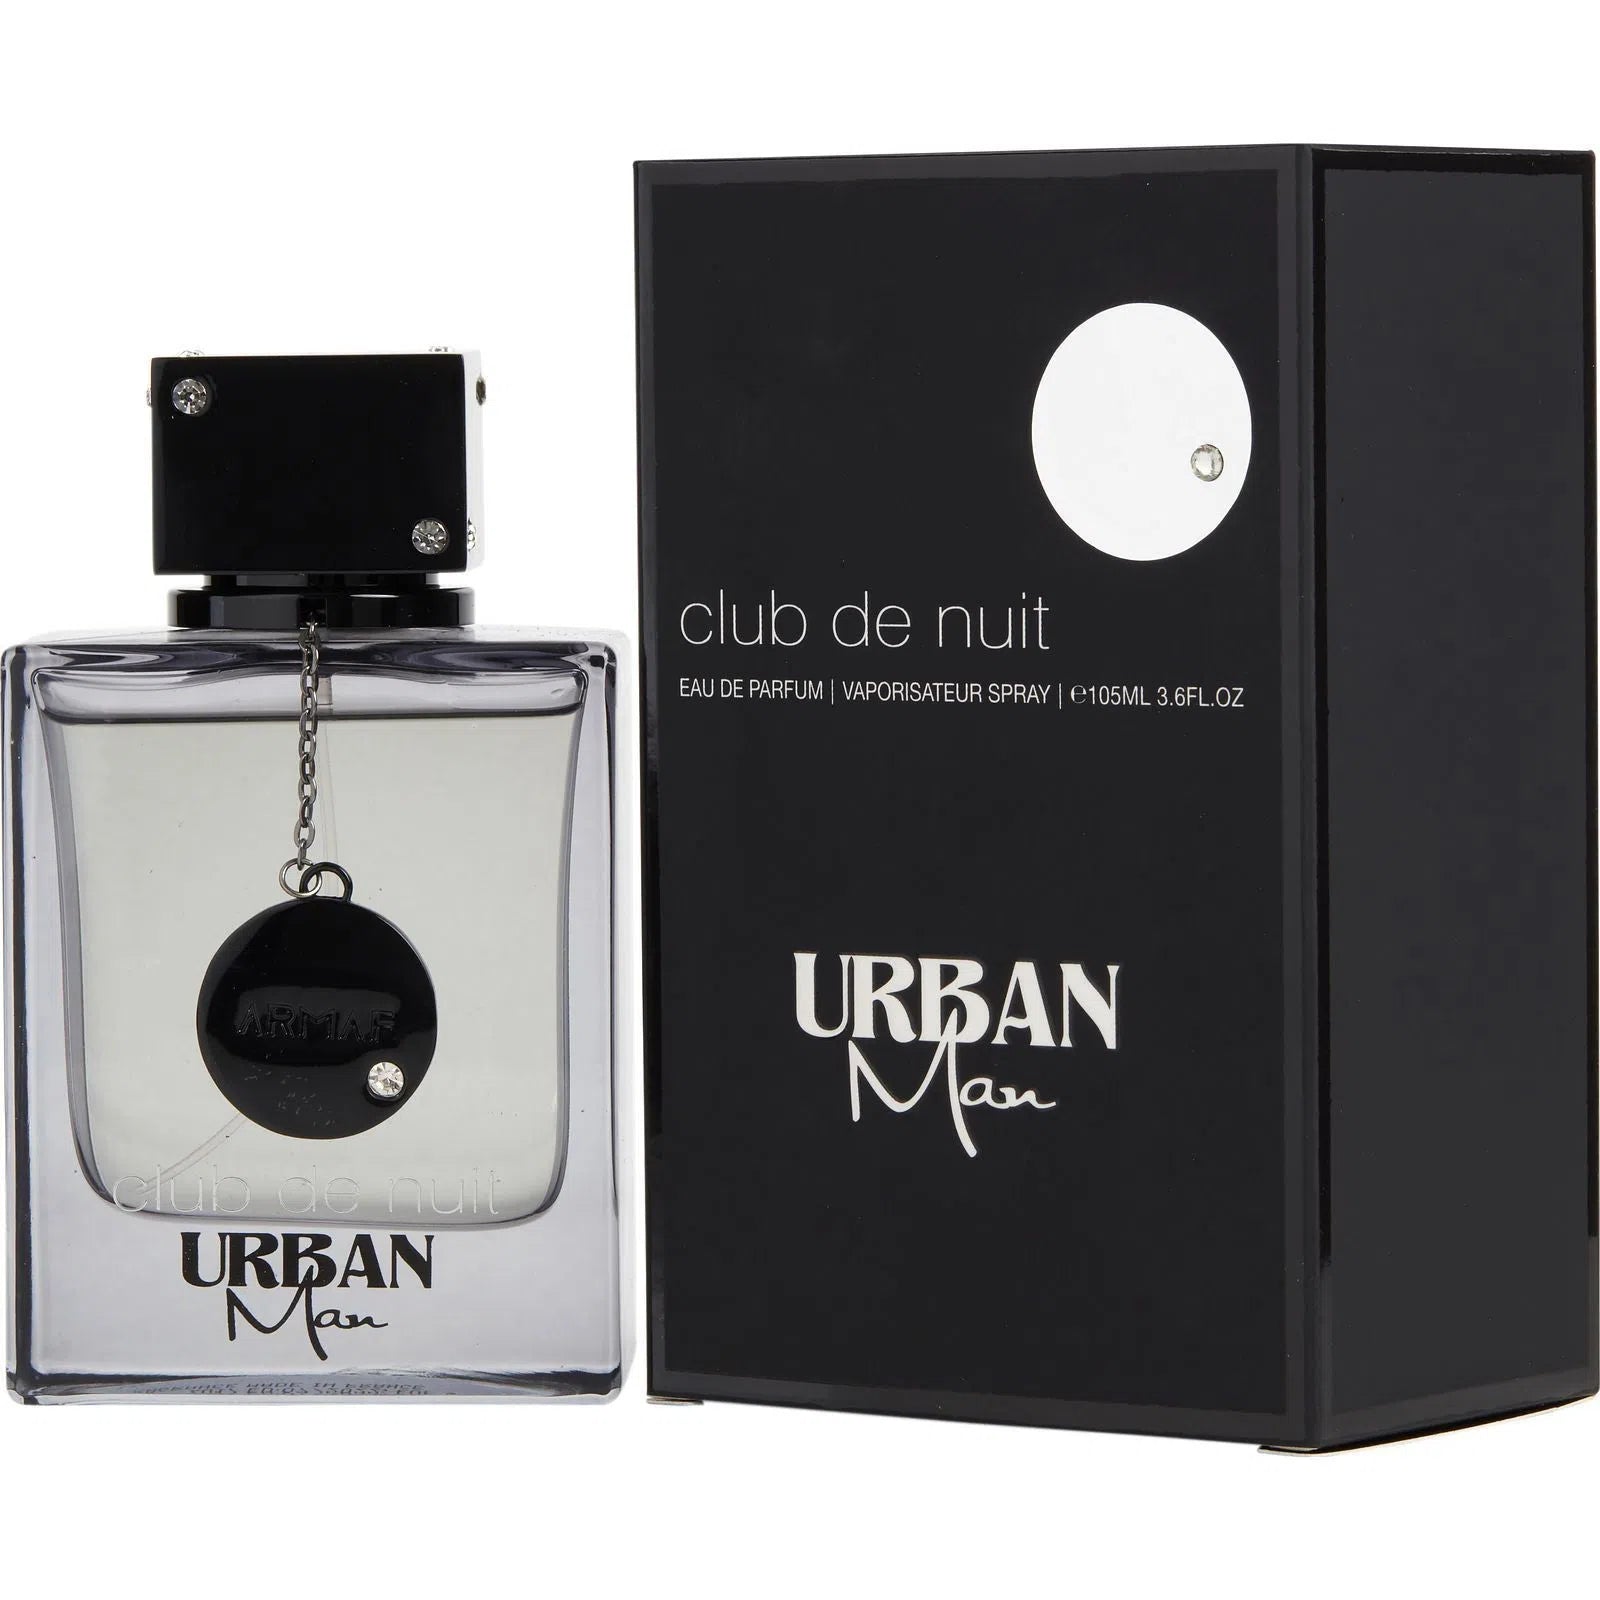 Perfume Armaf Club de Nuit Urban Man EDP (M) / 105 ml - 6294015102642- Prive Perfumes Honduras